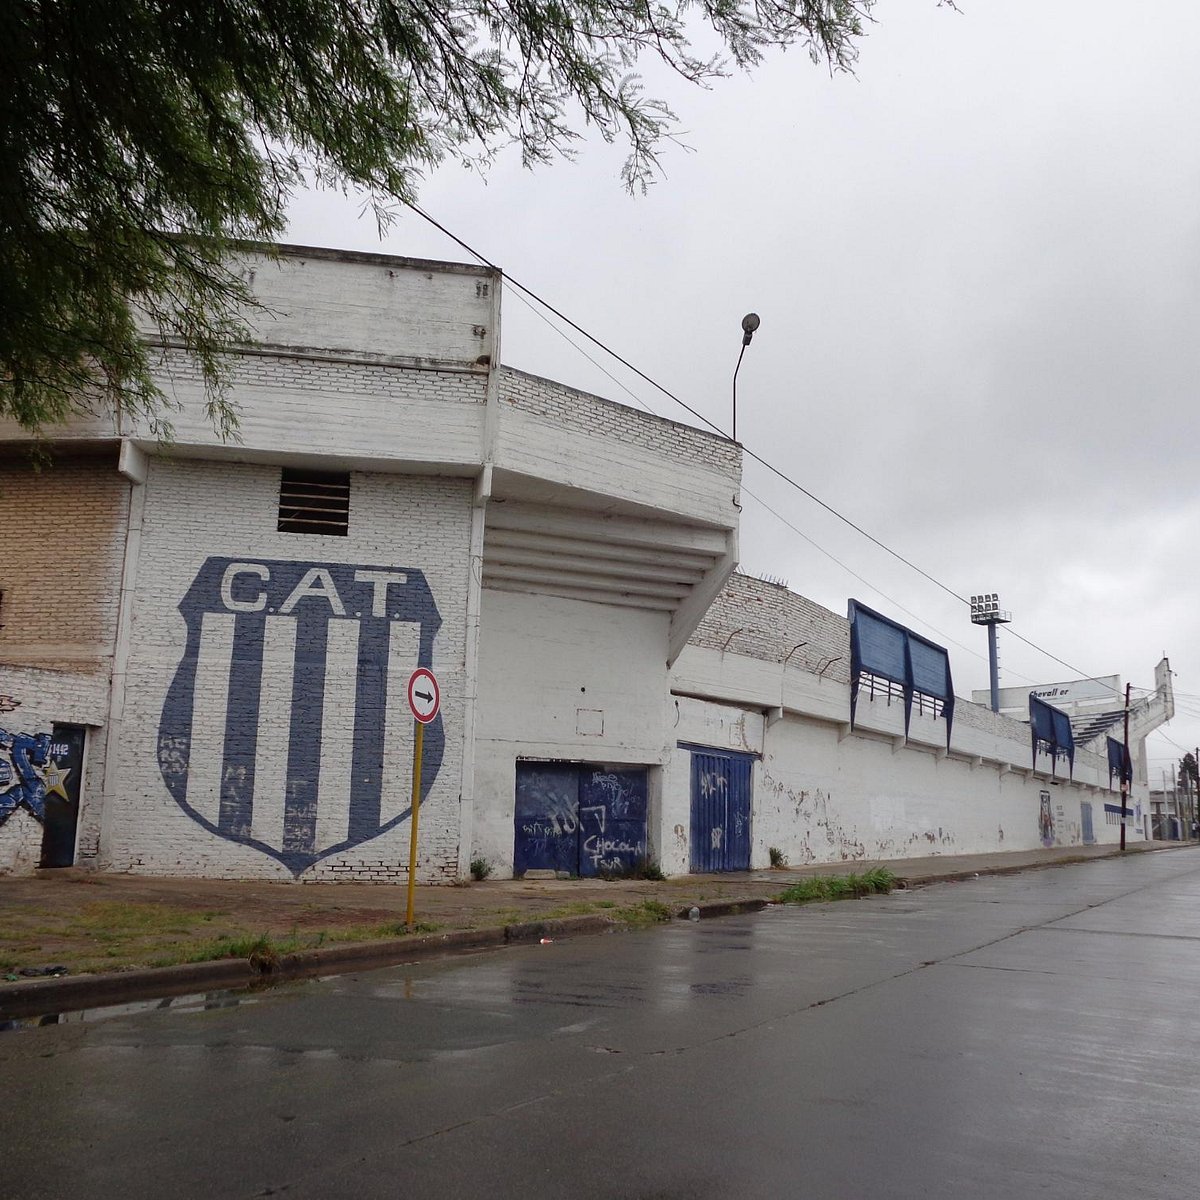 No pudo con San Miguel – Club Atlético Villa San Carlos